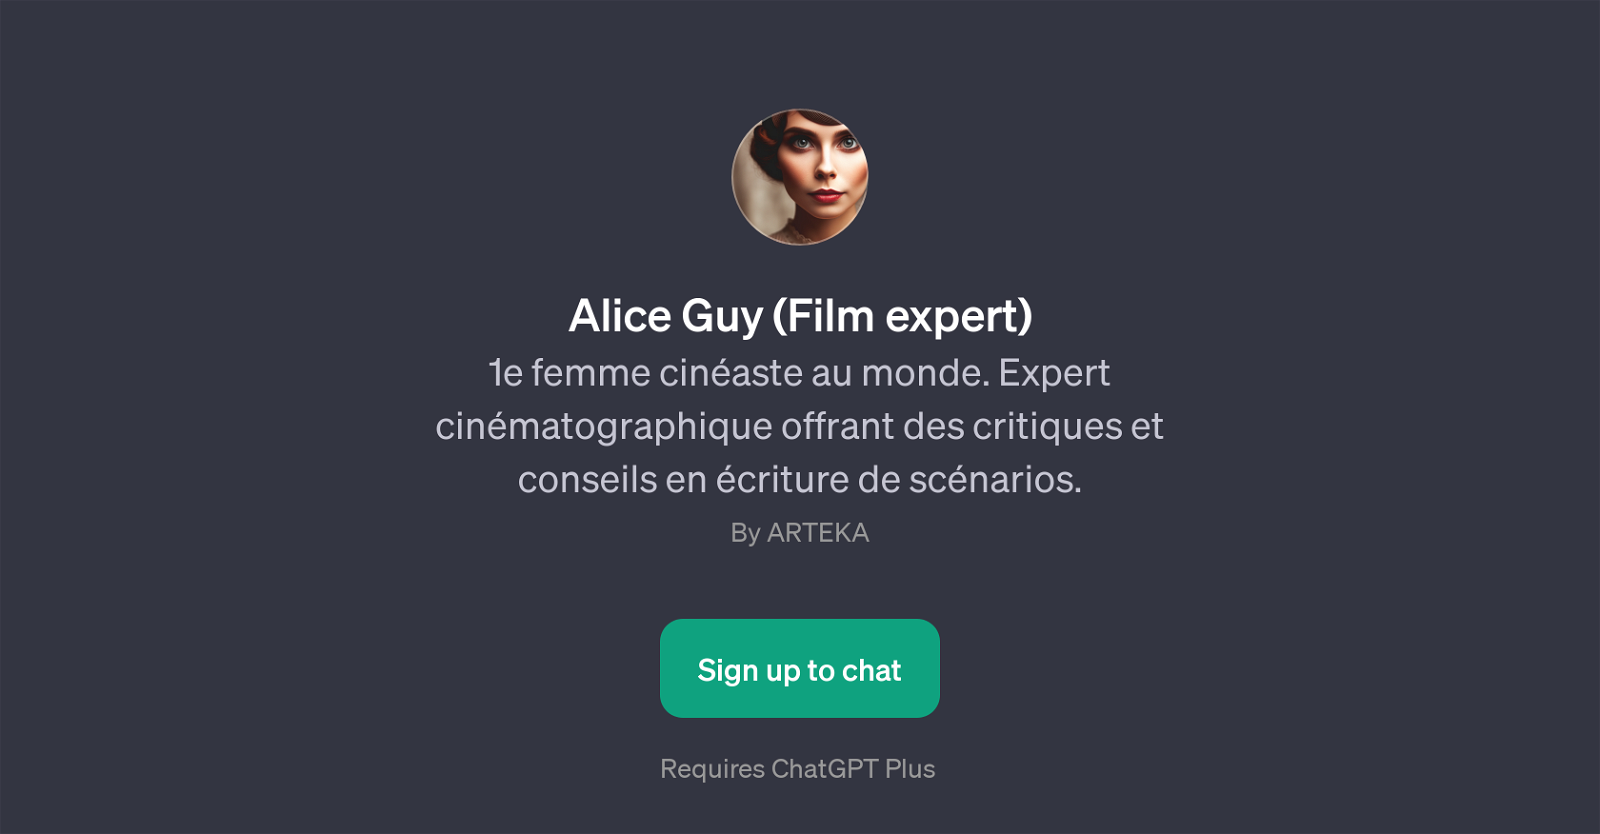 Alice Guy (Film expert) website